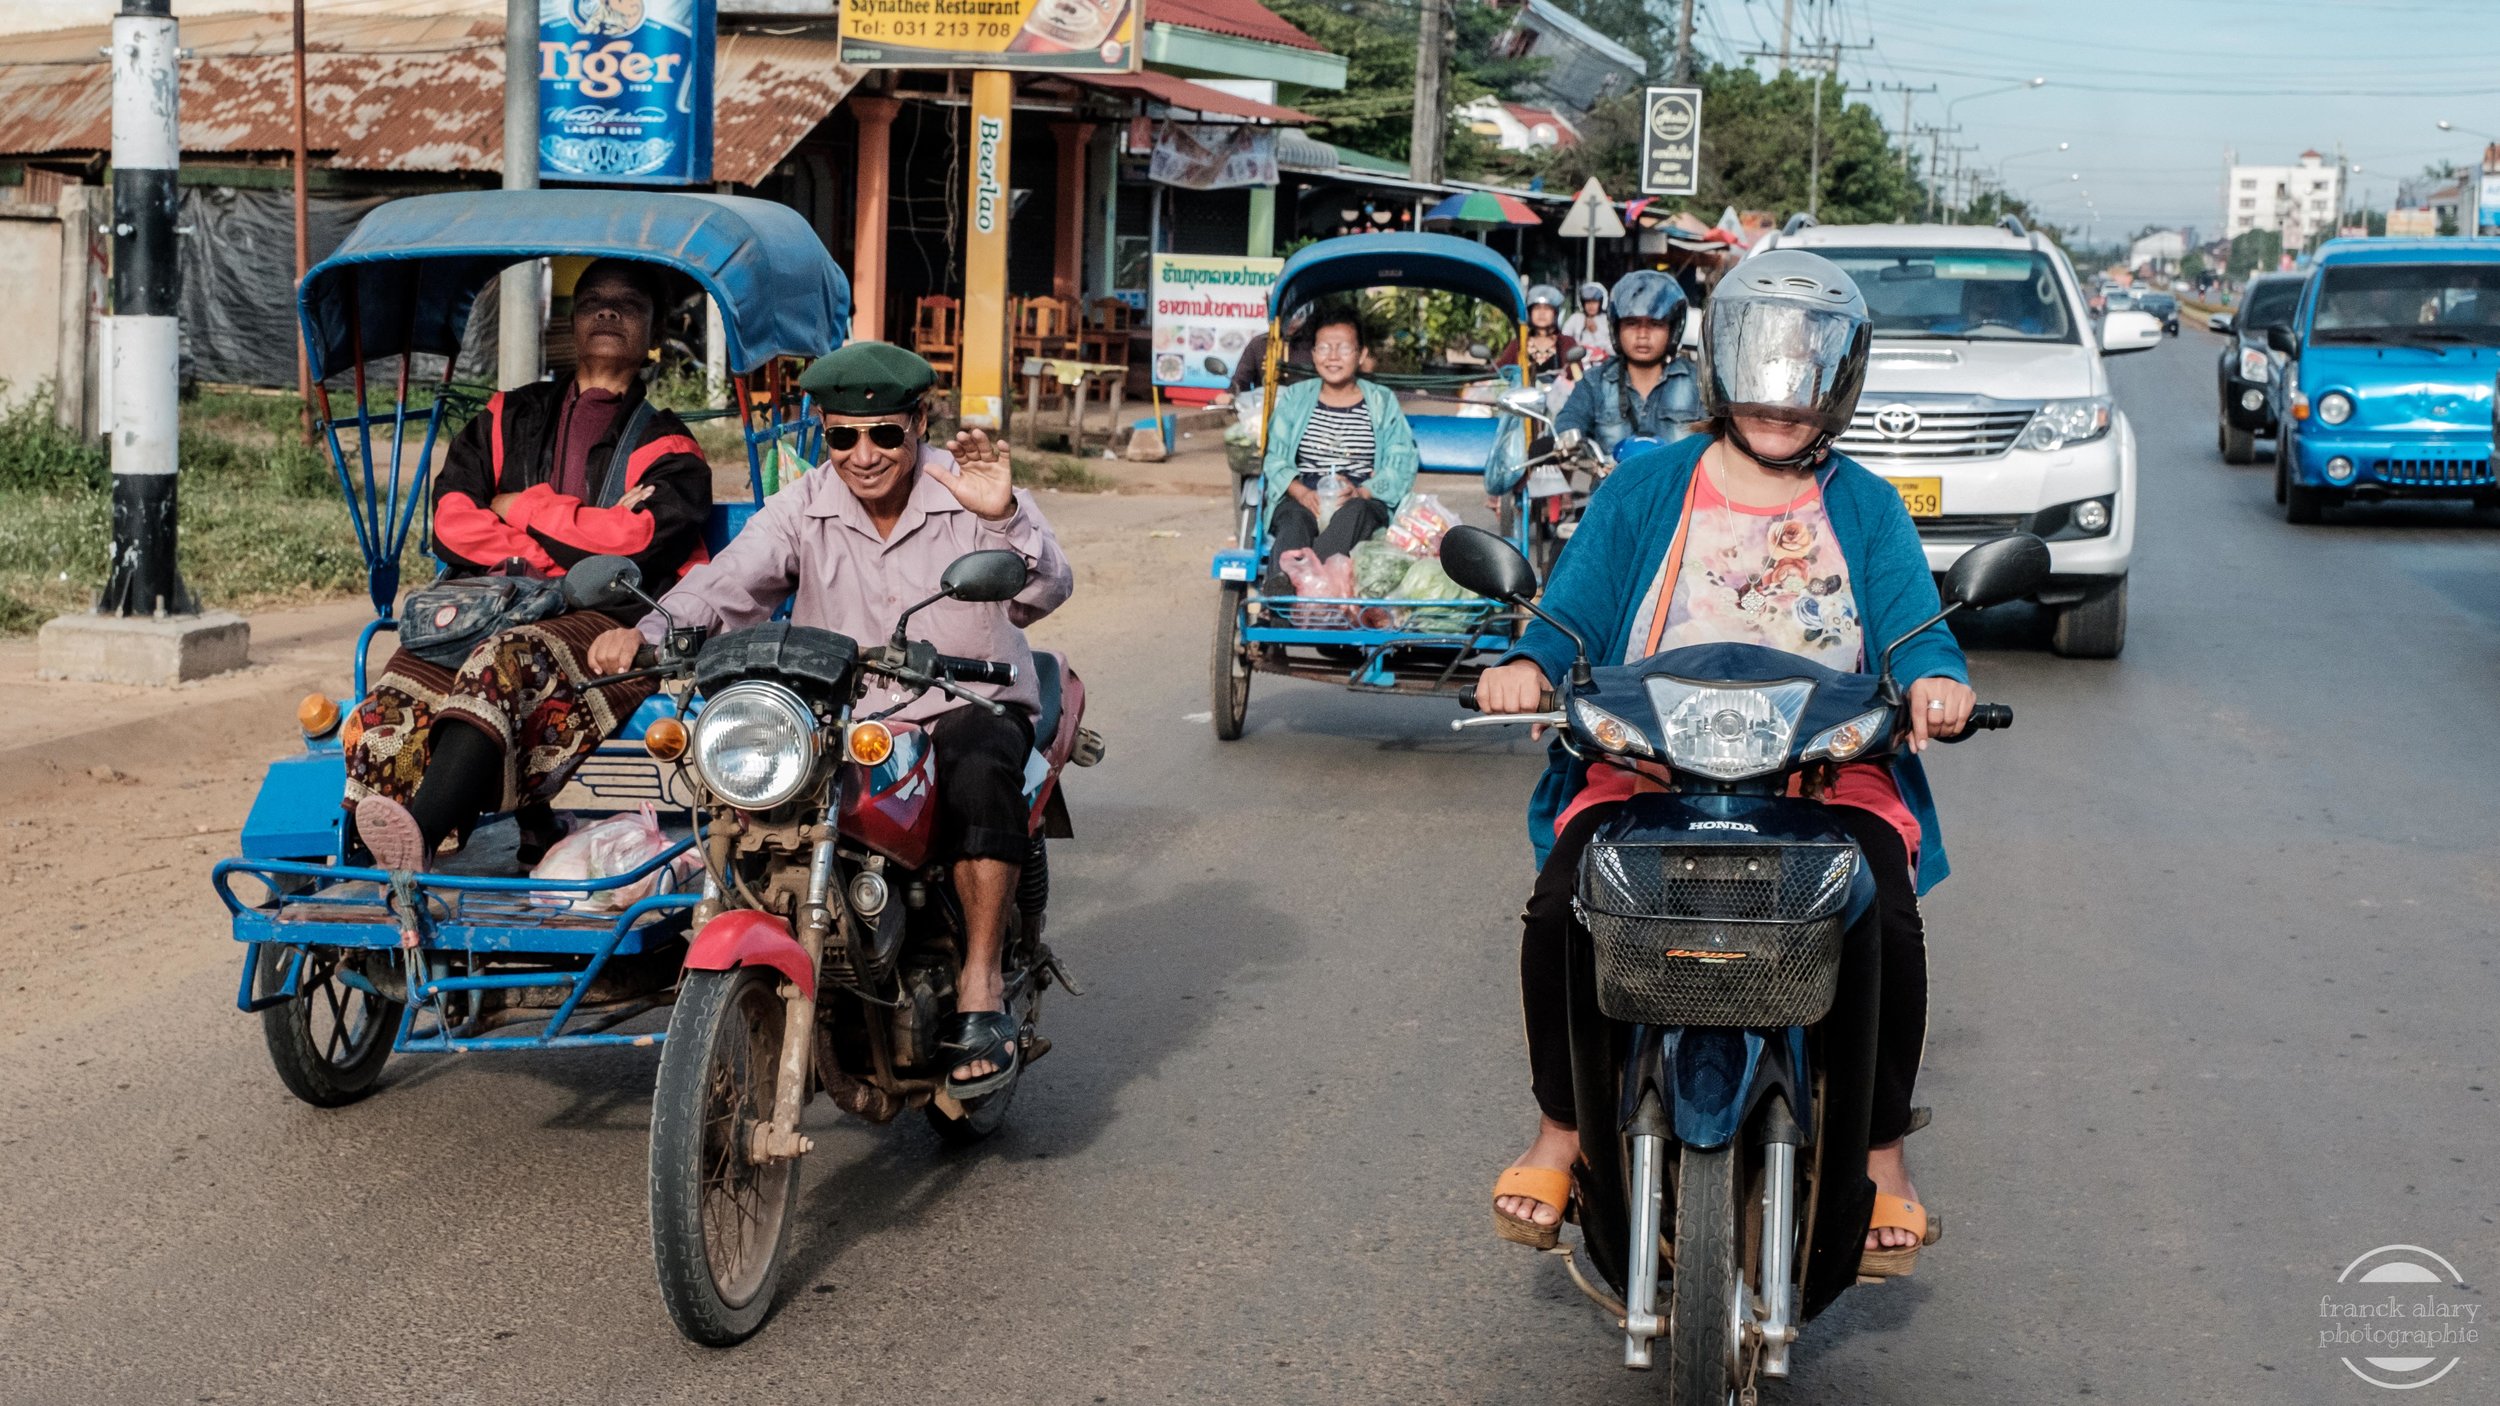   Samkolangs   Les tuks-tuks sont partout en Asie du Sud Est et constituent un moyen de transport rapide et économique très utilisé tant en ville qu’à la campagne. Il y a diffèrent modèles en fonction de leur capacité et de leur puissance.&nbsp;Le "s